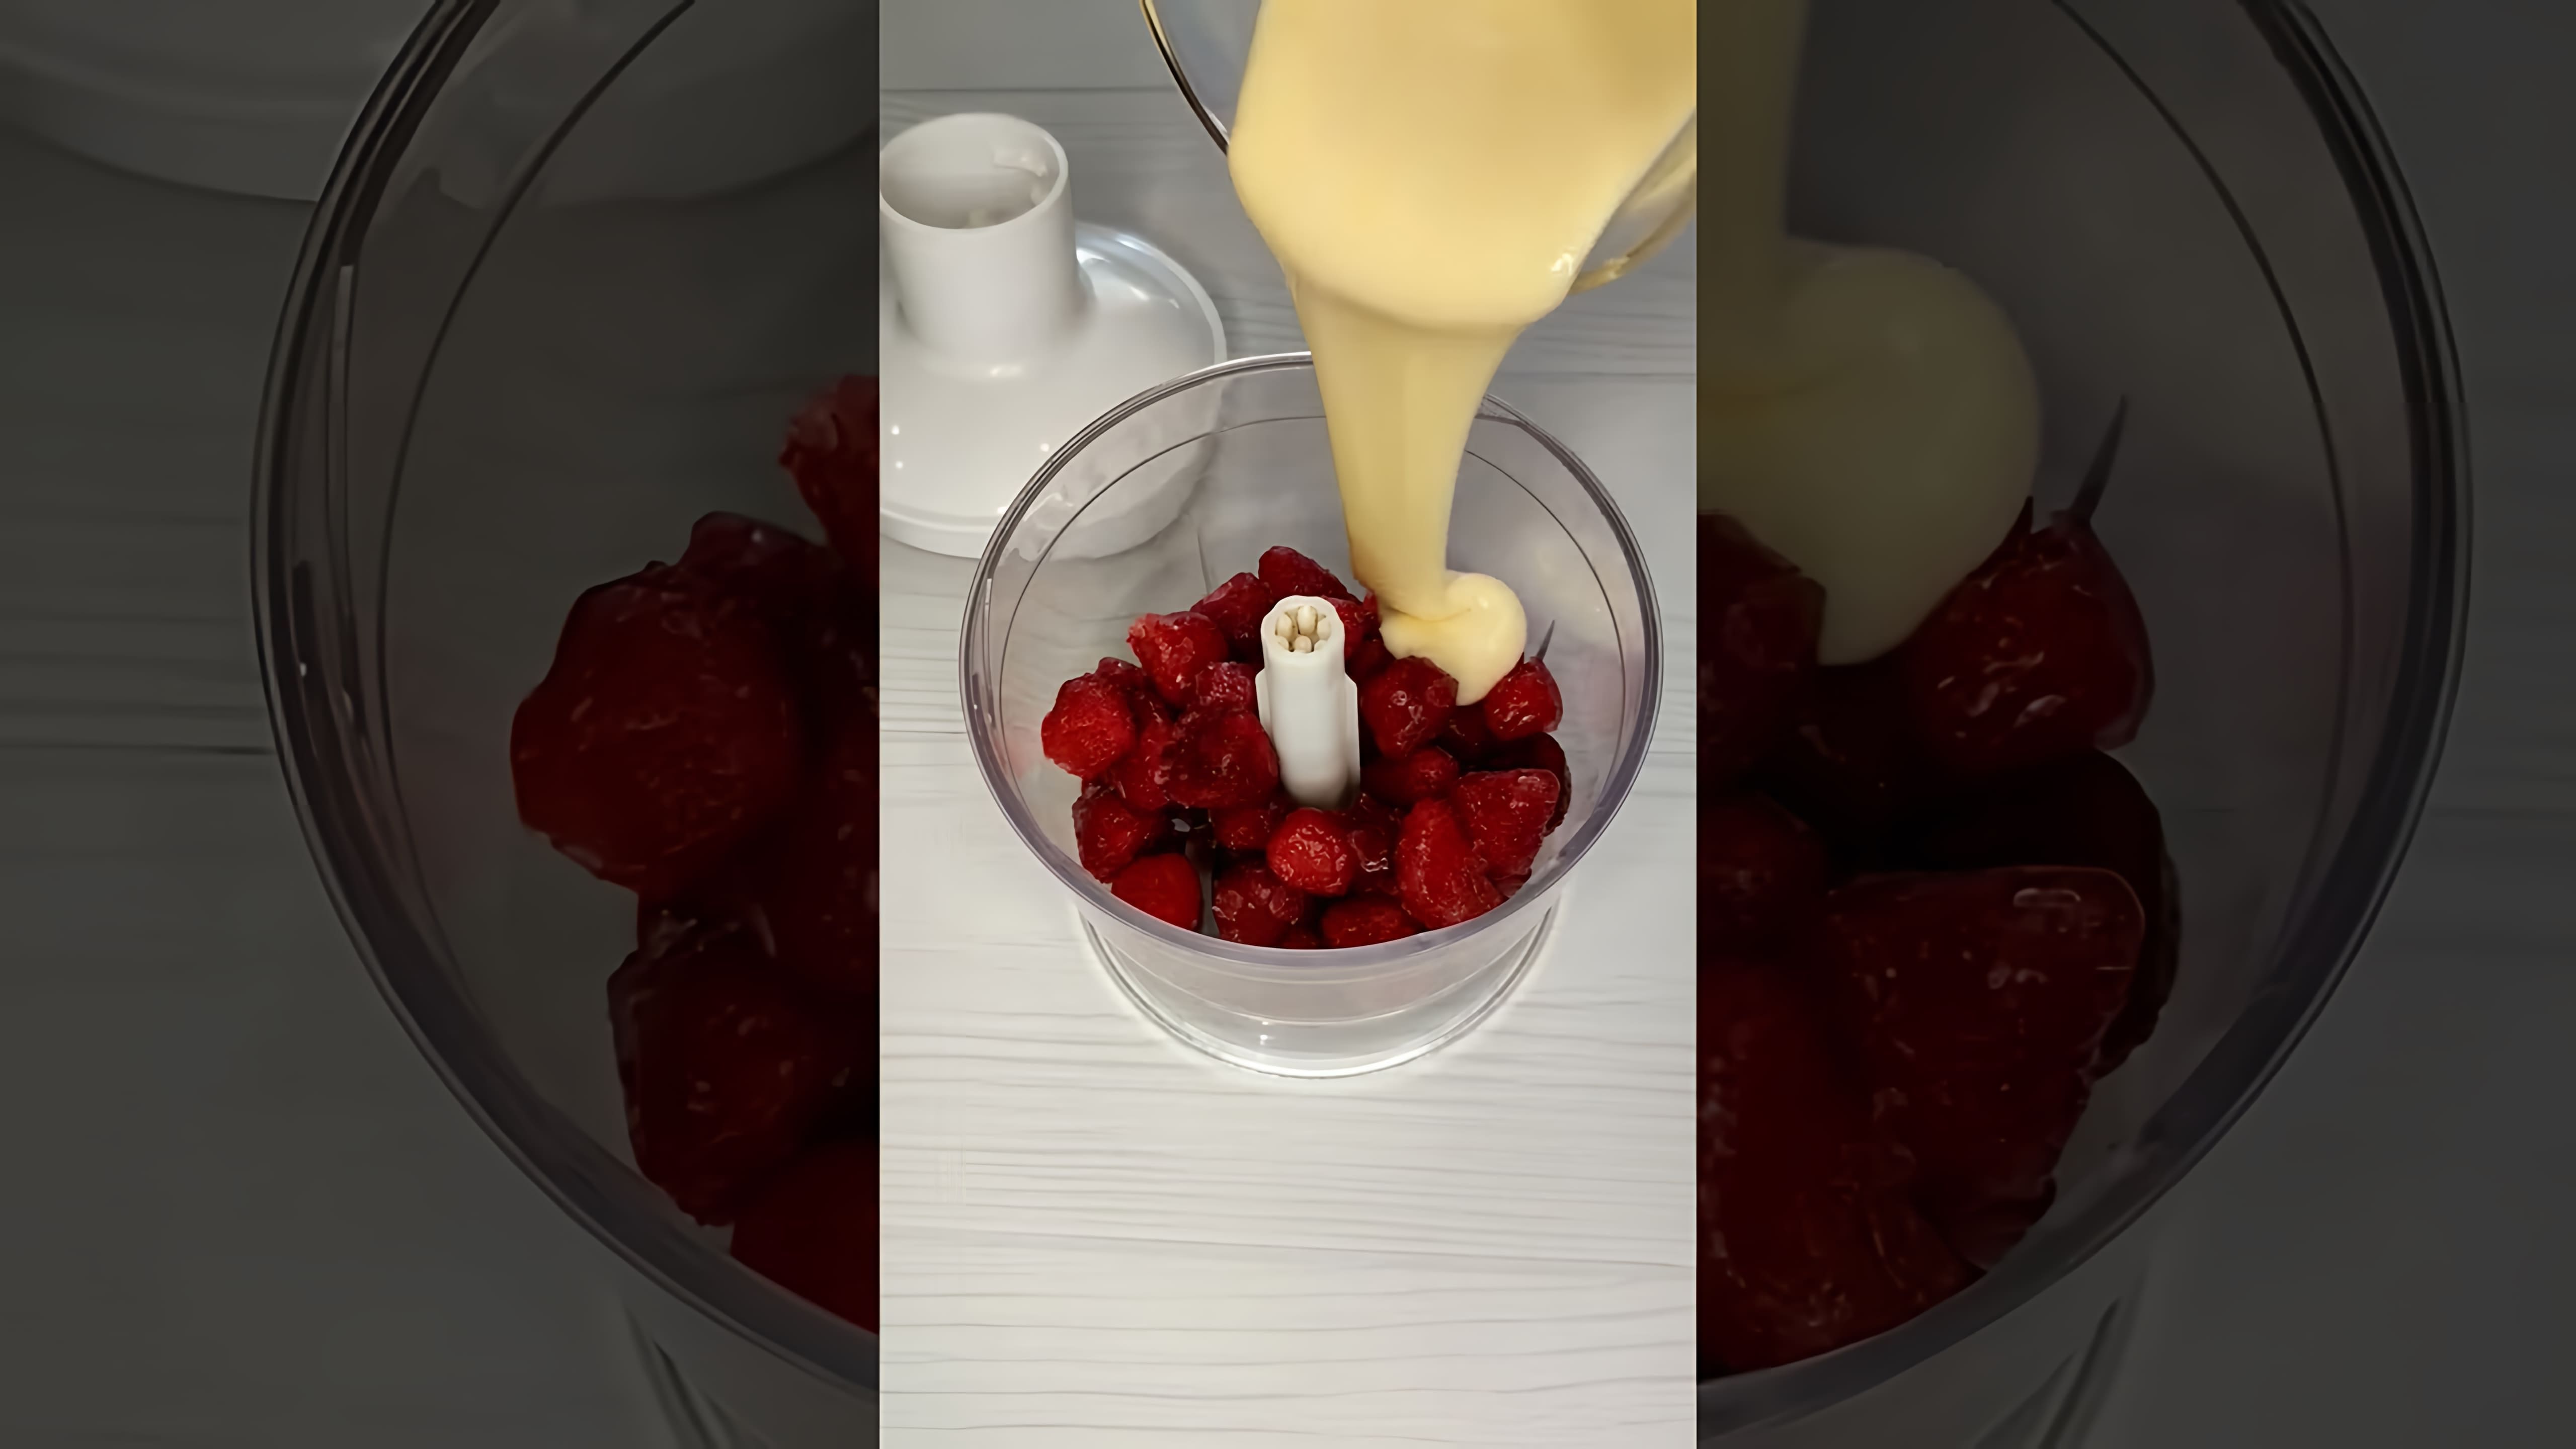 В этом видео представлен лайфхак использования замороженных ягод для приготовления вкусного десерта - мороженого